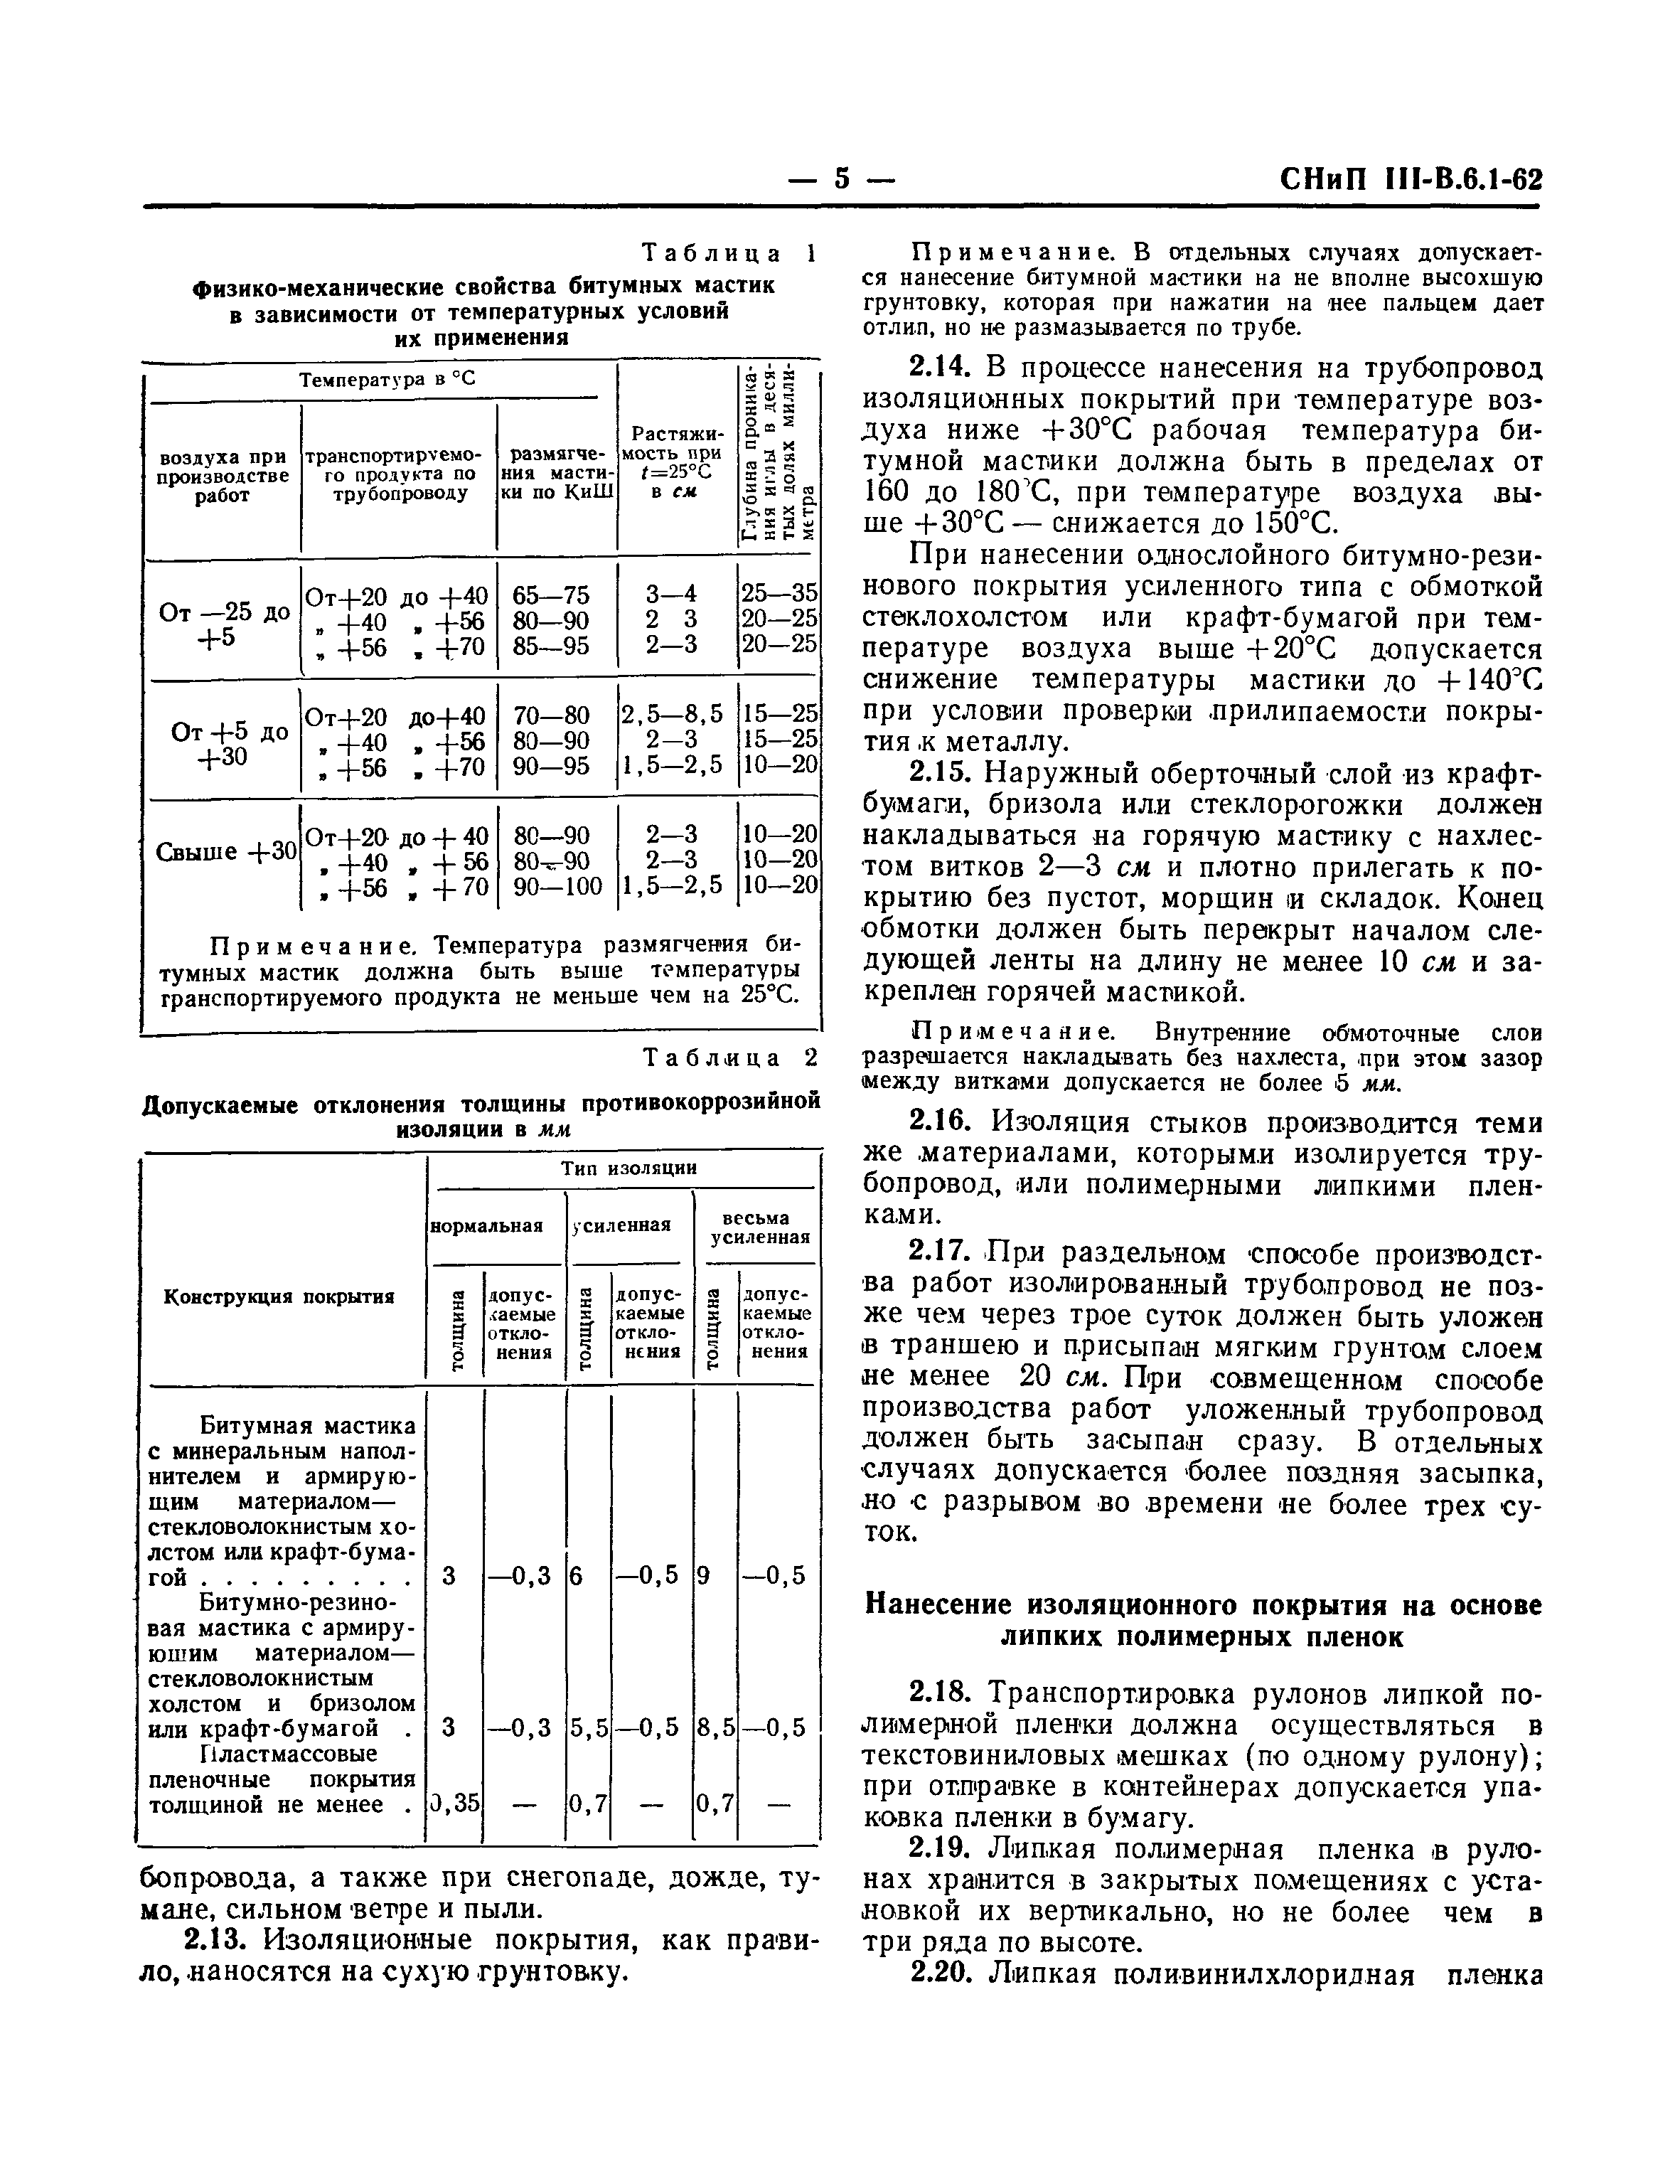 СНиП III-В.6.1-62